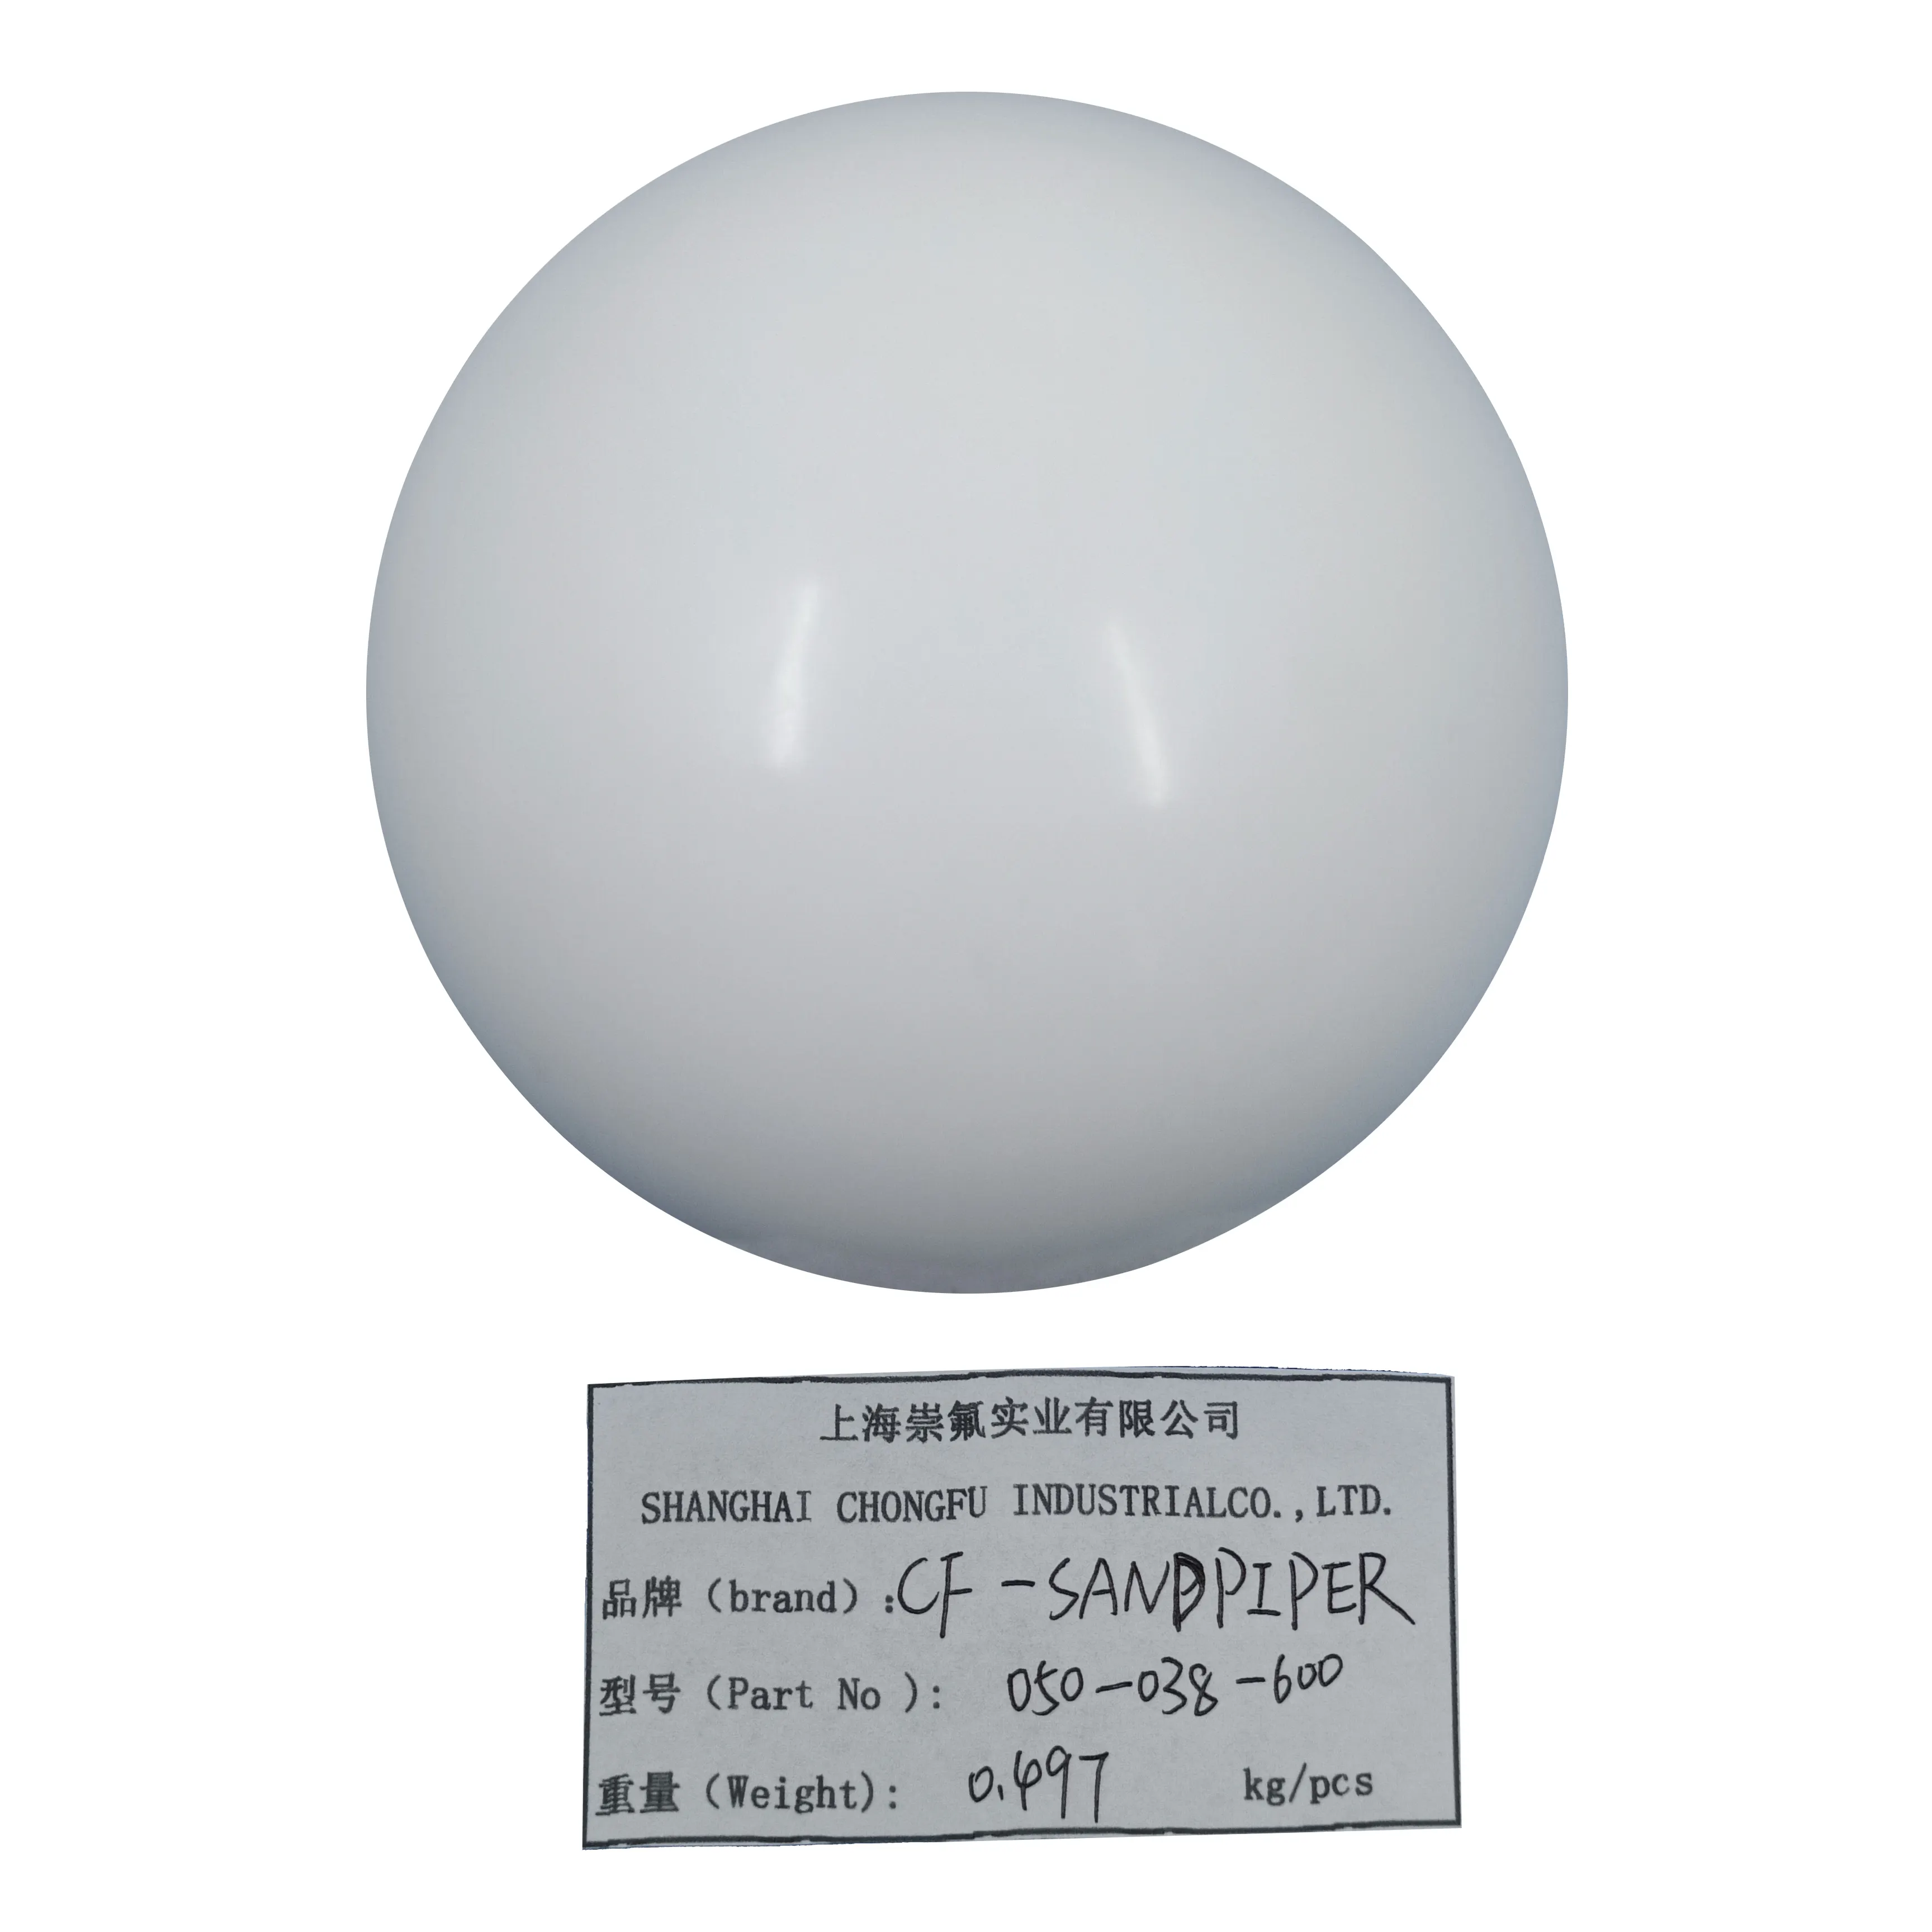 Bola de válvula de goma PTFE CF 050-038-600 para Sandpiper Suministro de piezas de bomba de diafragma neumática para varios tamaños y materiales